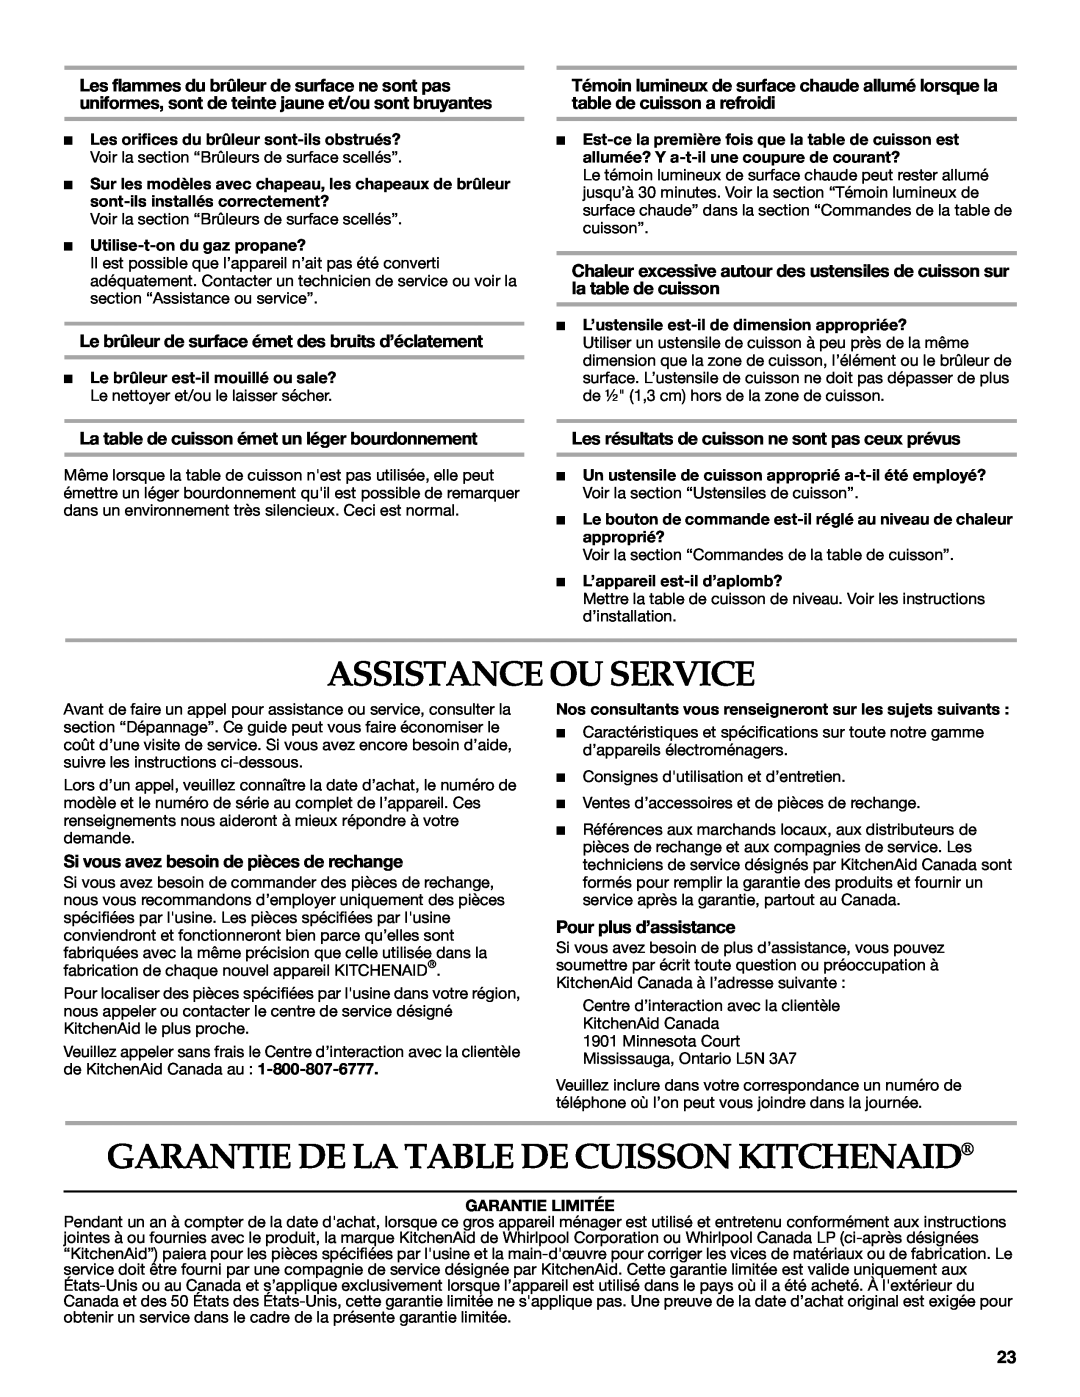 KitchenAid KFGS366, KFGS306 manual Assistance Ou Service, Garantie De La Table De Cuisson Kitchenaid, Pour plus d’assistance 